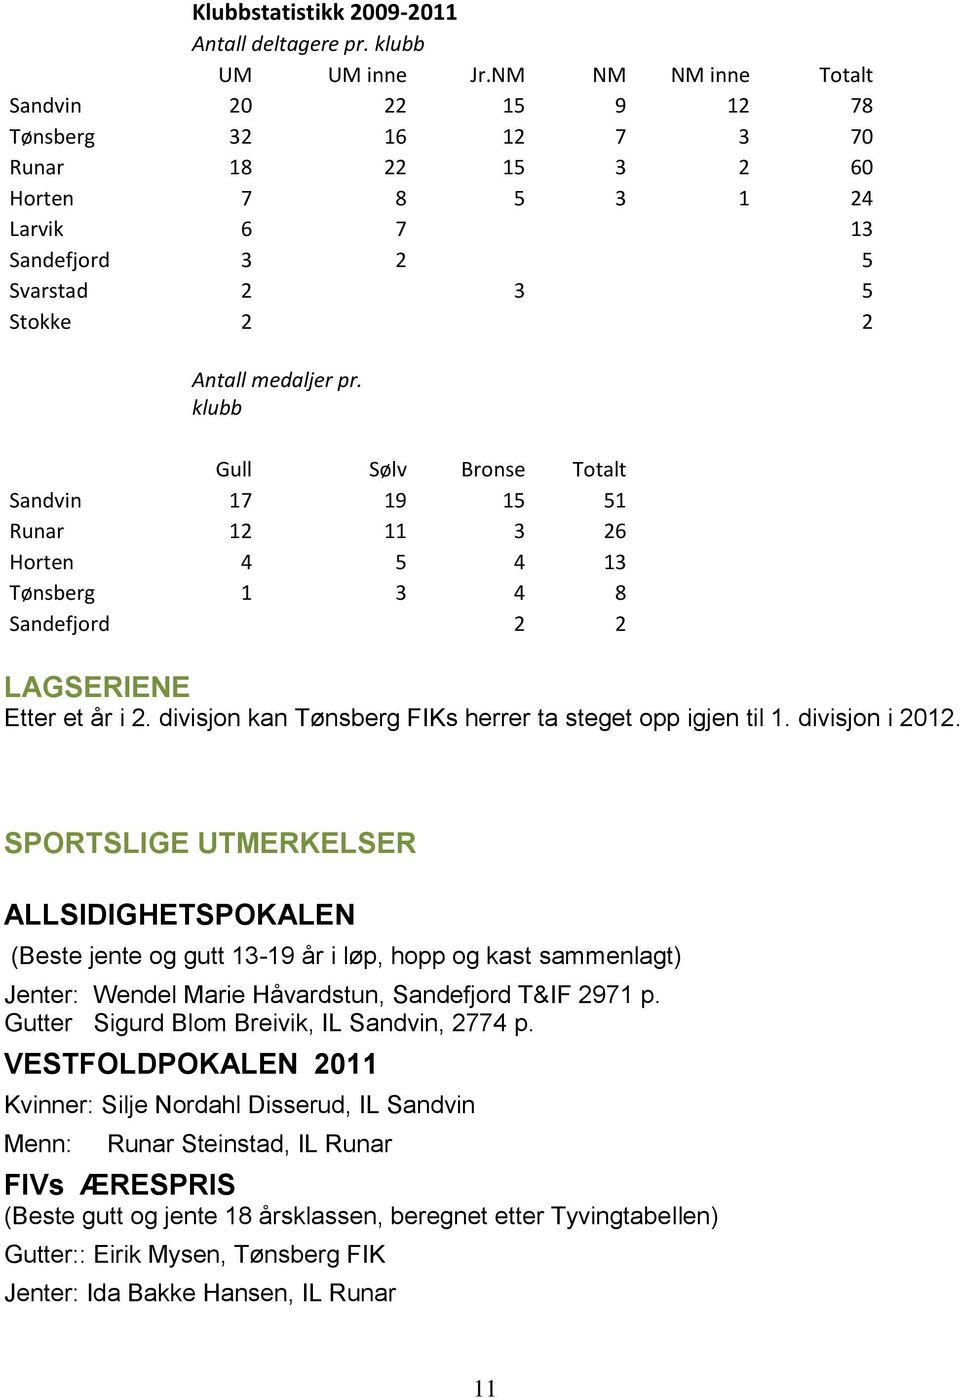 klubb Gull Sølv Bronse Totalt Sandvin 17 19 15 51 Runar 12 11 3 26 Horten 4 5 4 13 Tønsberg 1 3 4 8 Sandefjord 2 2 LAGSERIENE Etter et år i 2.